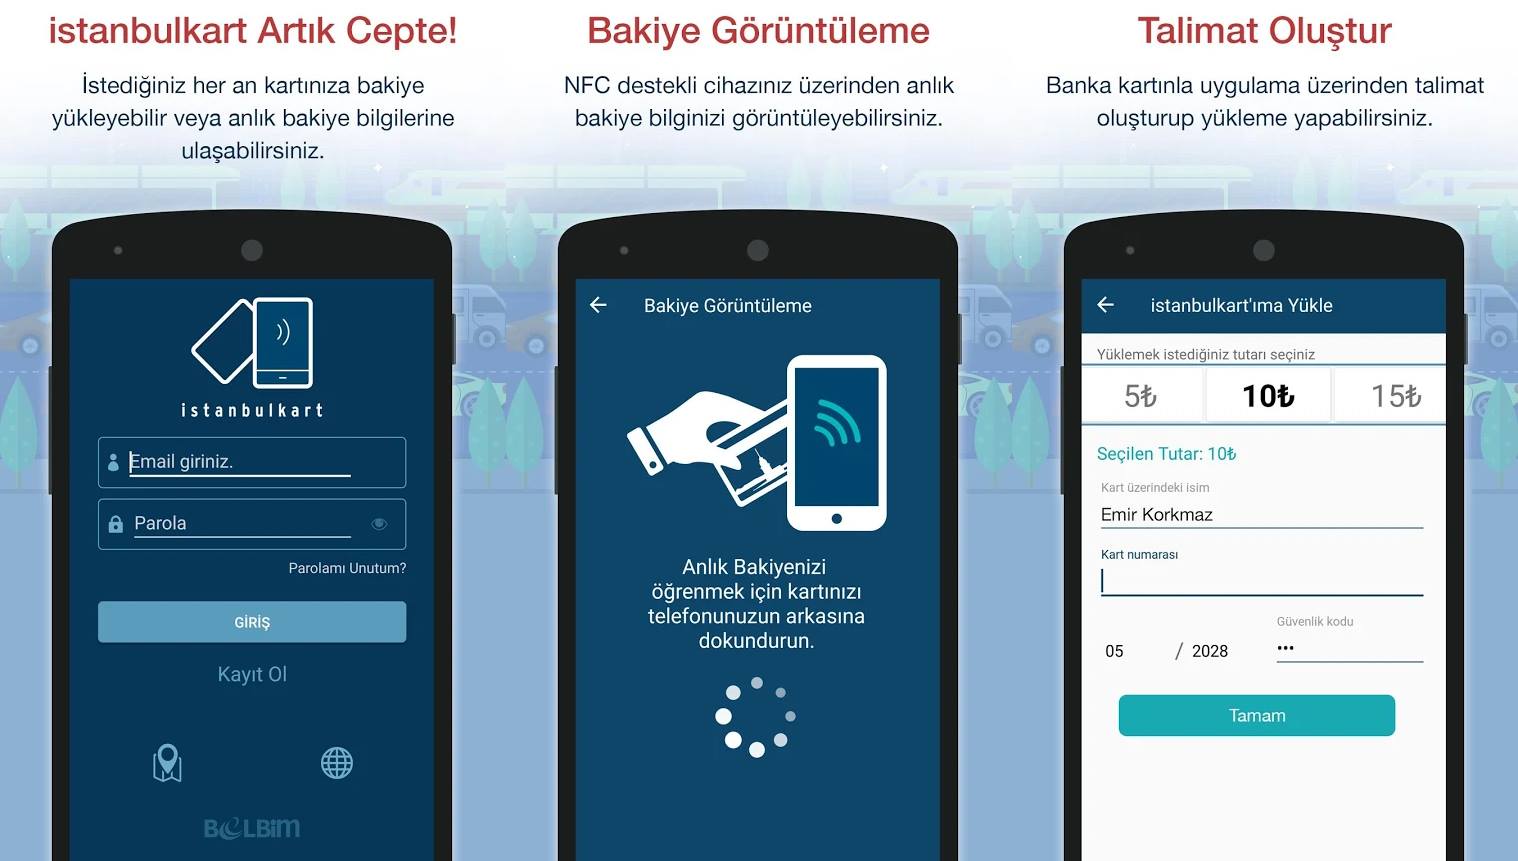 İstanbulkart'a mobil uygulama ile otomatik bakiye yükleme devri başladı